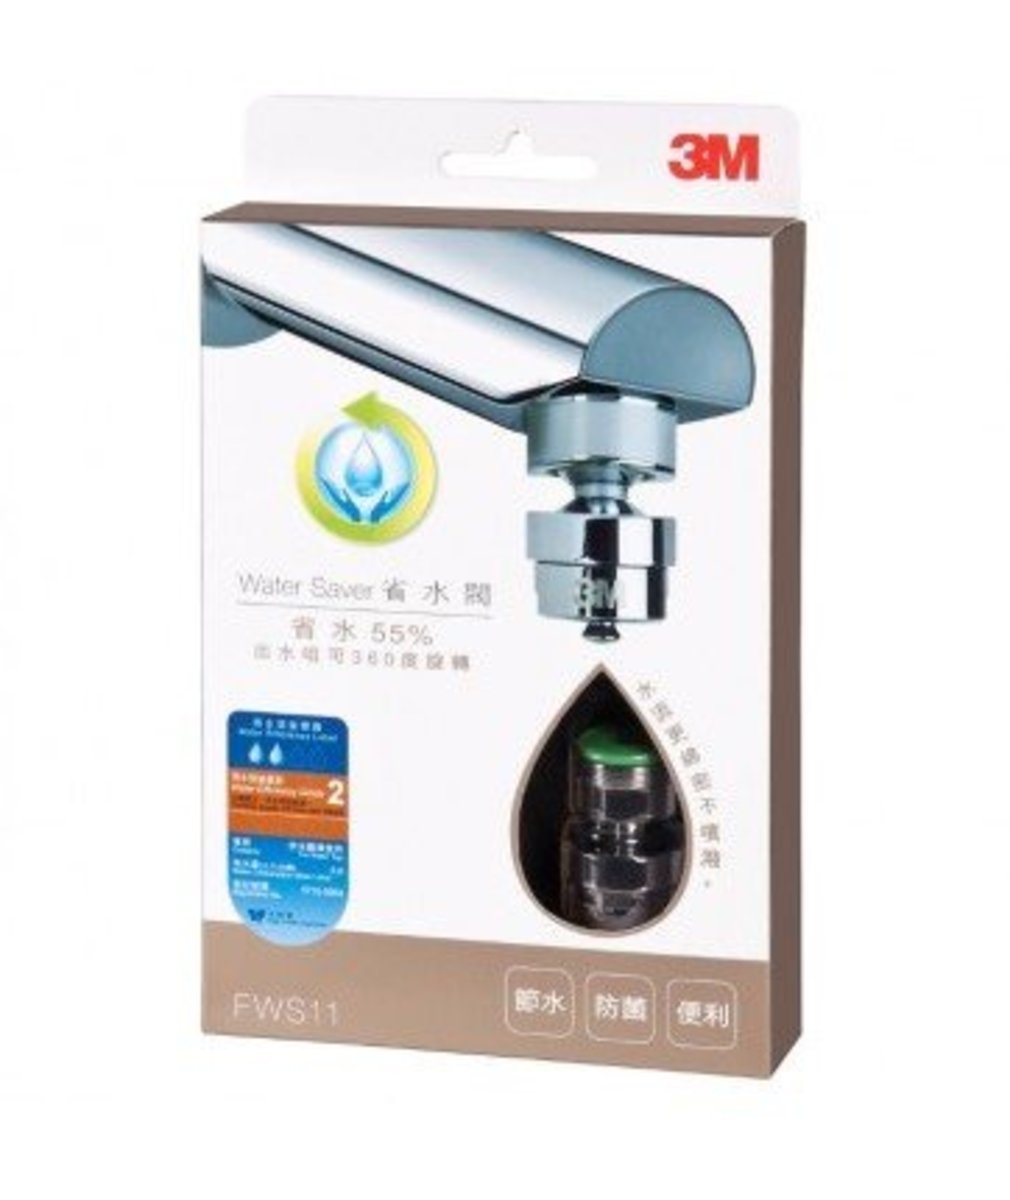 3M™ - 3M FWS11 water saving valve (45% water saving + 360 rotor)